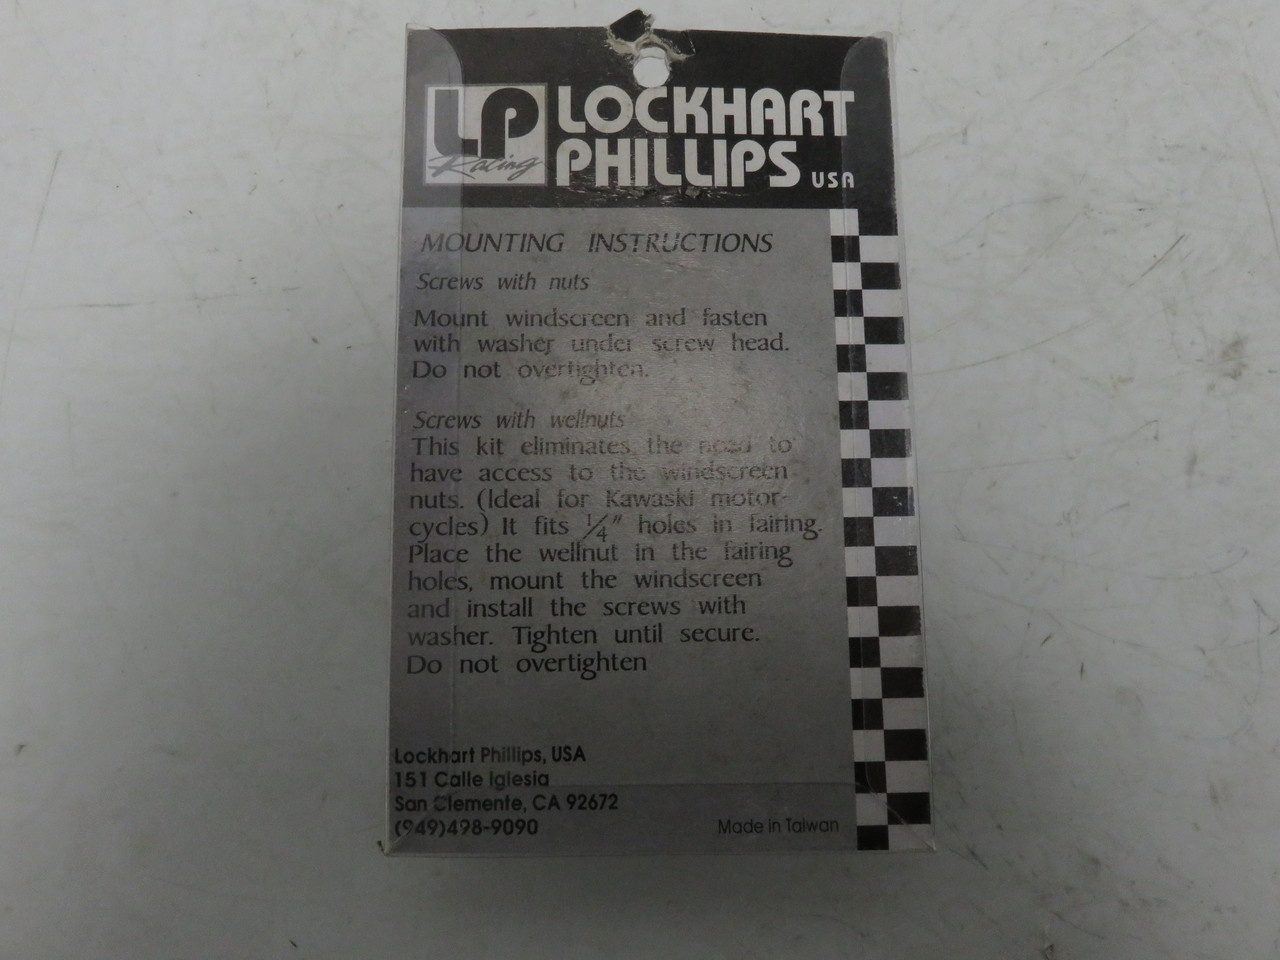 Kawasaki Lockhart Phillips well Nut 1/4 Screws Windscreen 213-25